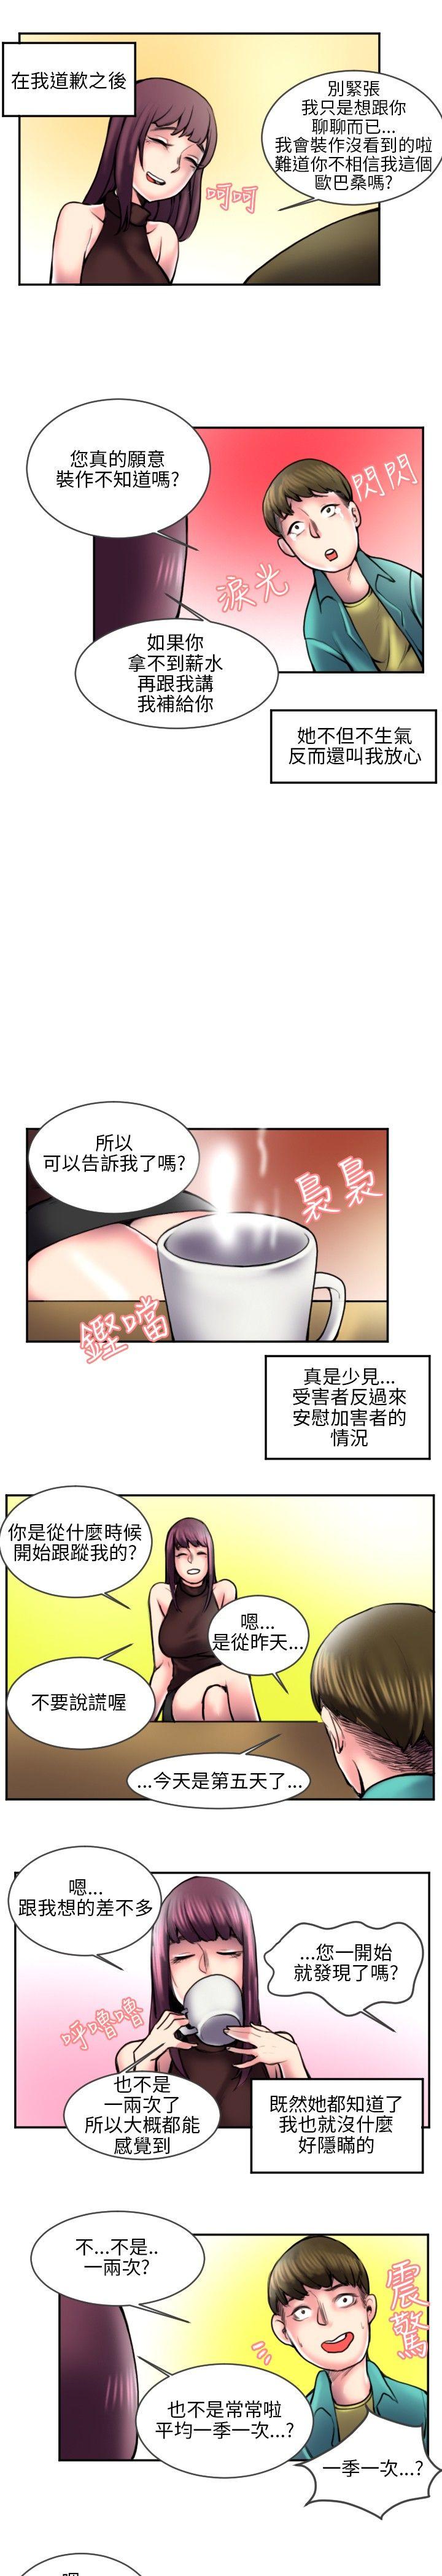 秘密Story  打工仔钓人妻(2) 漫画图片4.jpg